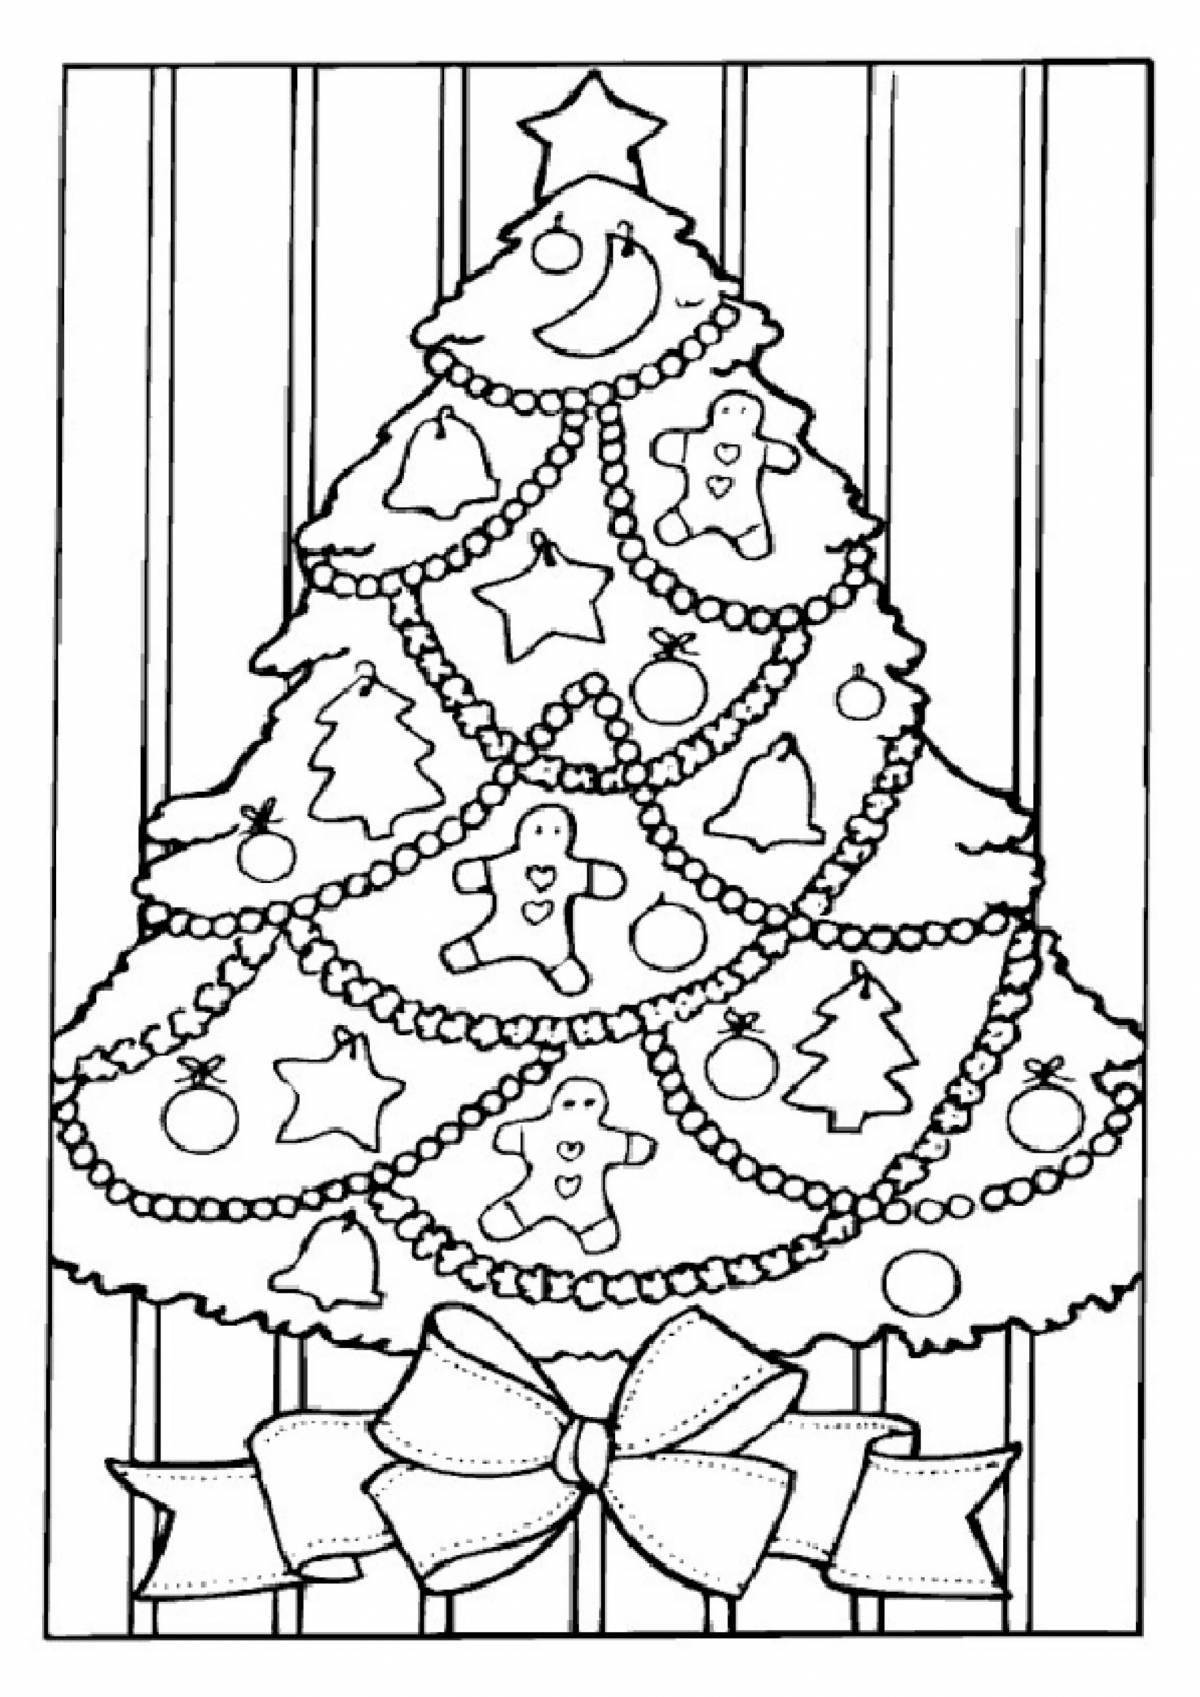 Великолепный рисунок рождественской елки